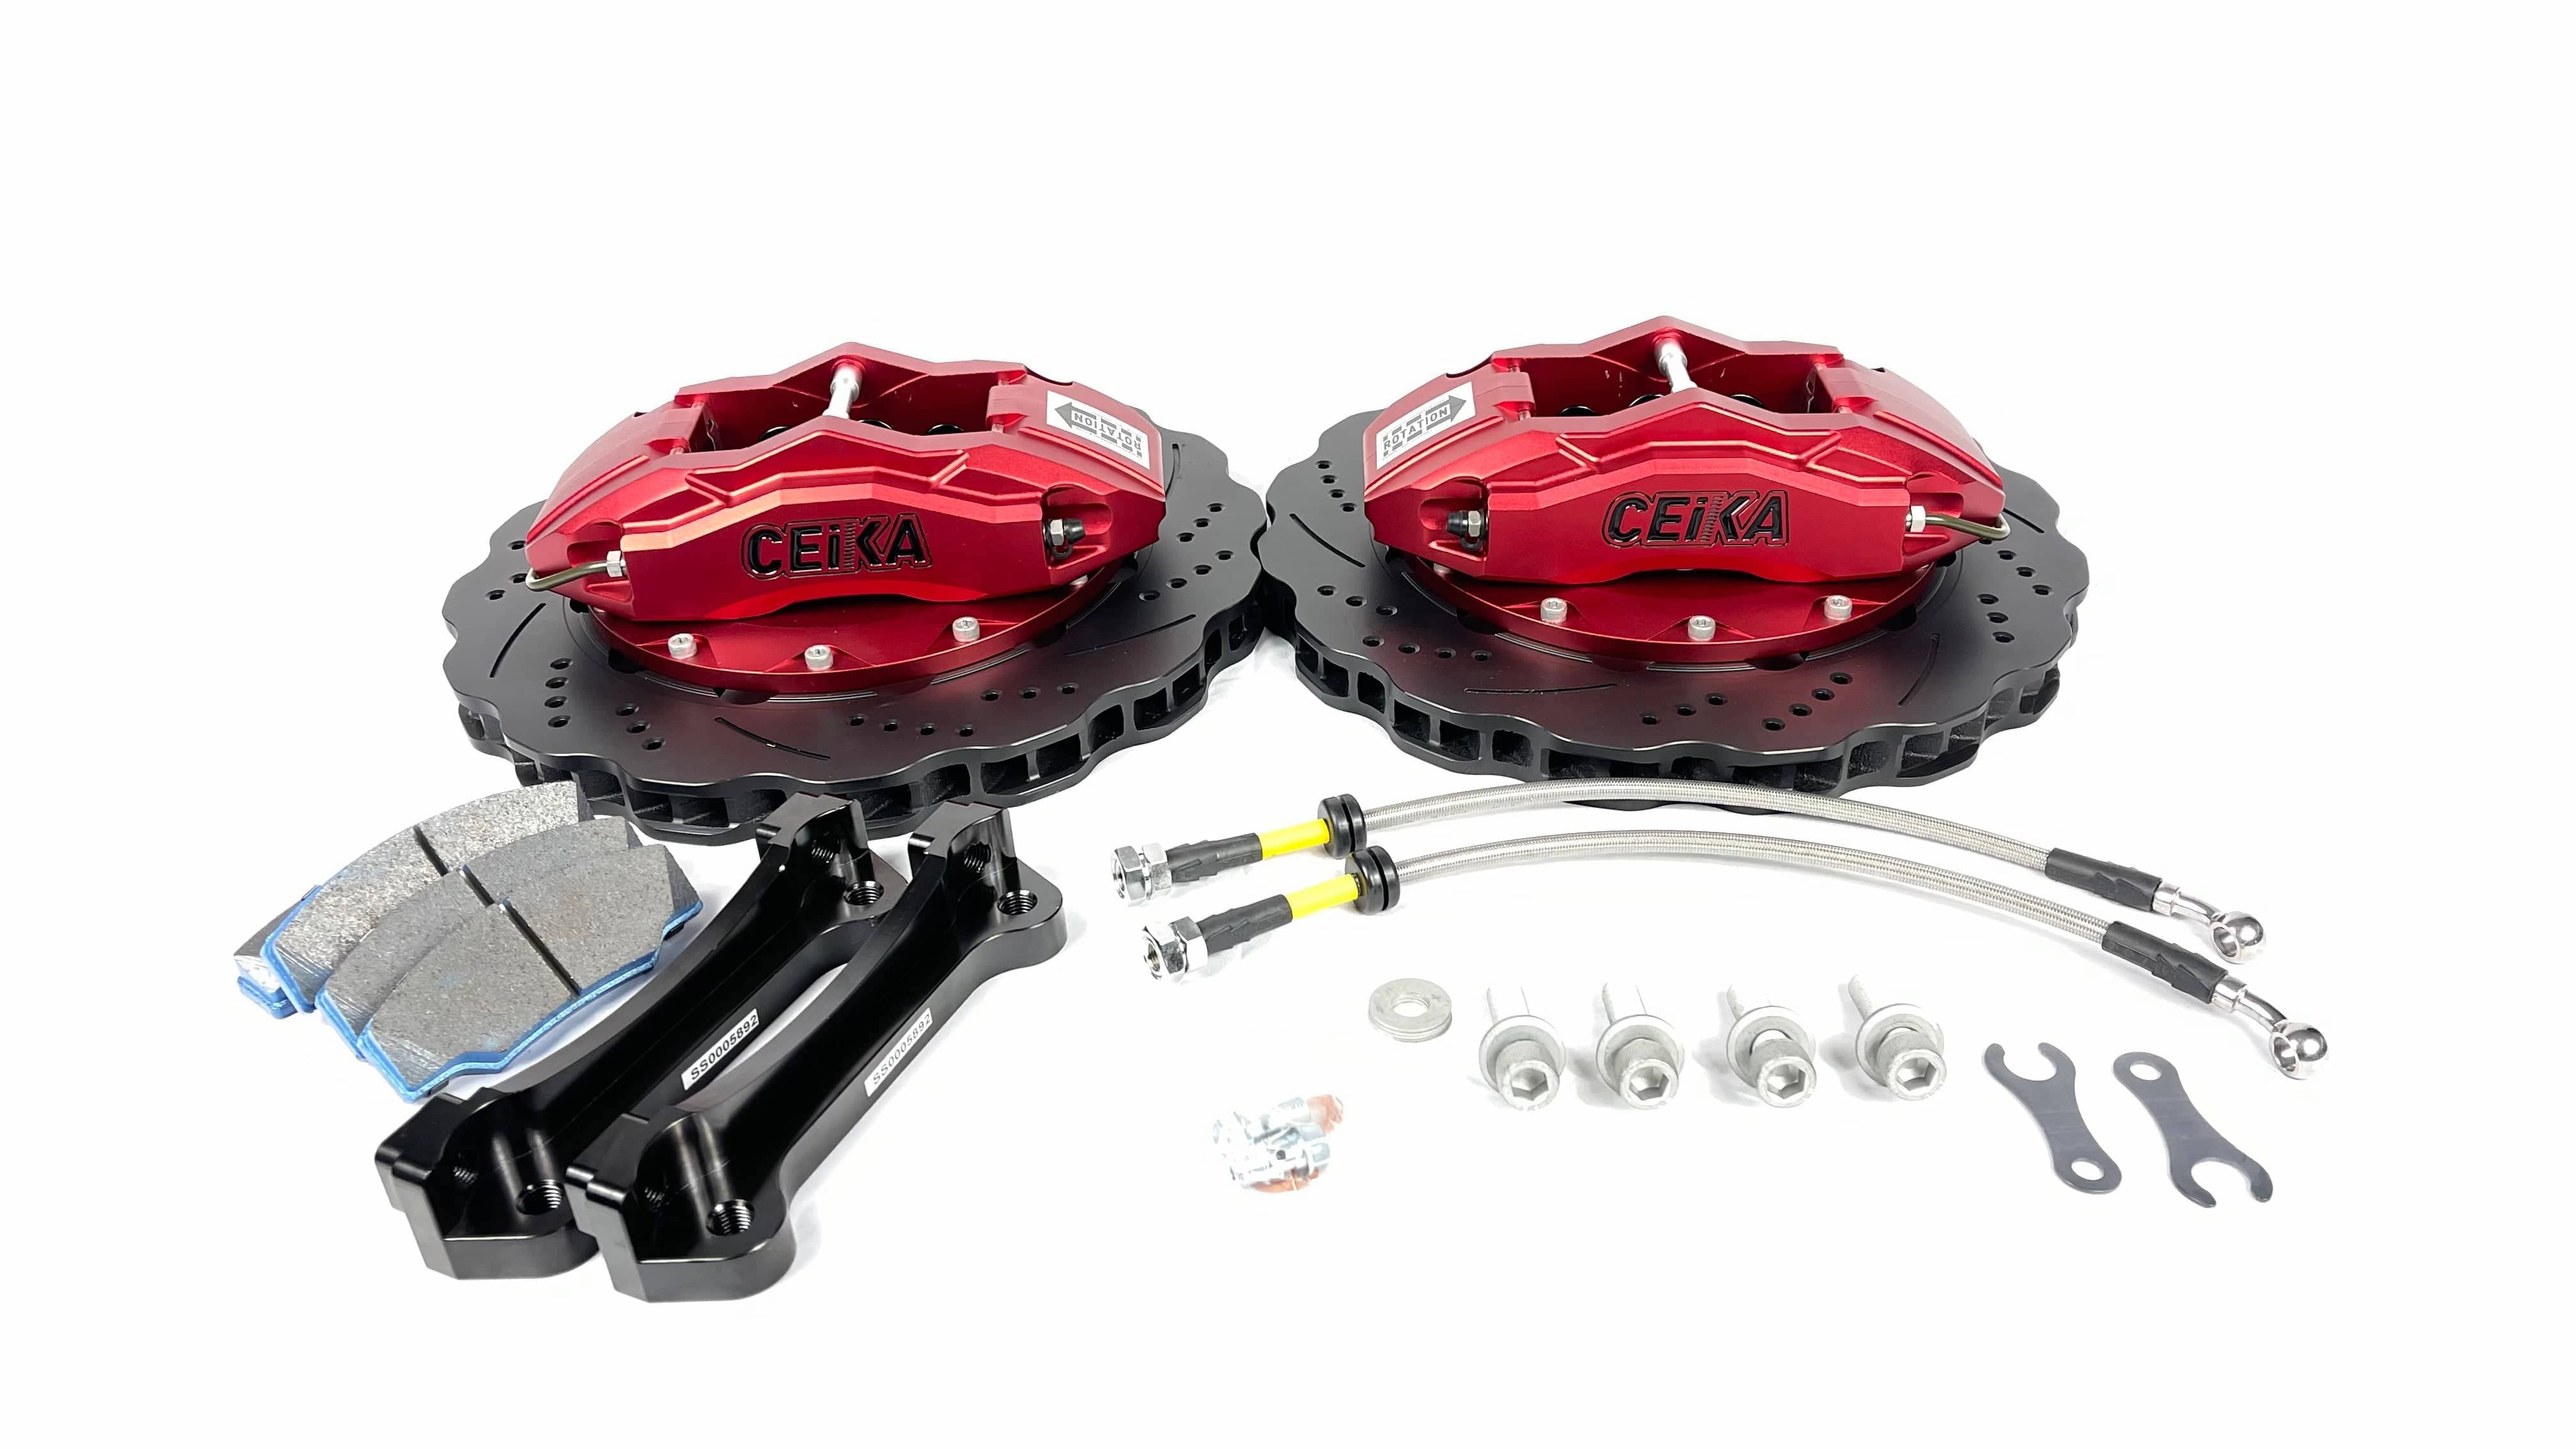  Freins - Pièces de rechange : Auto : Brake Kits, Rotors, Brake  Pads, Calipers & Parts et plus